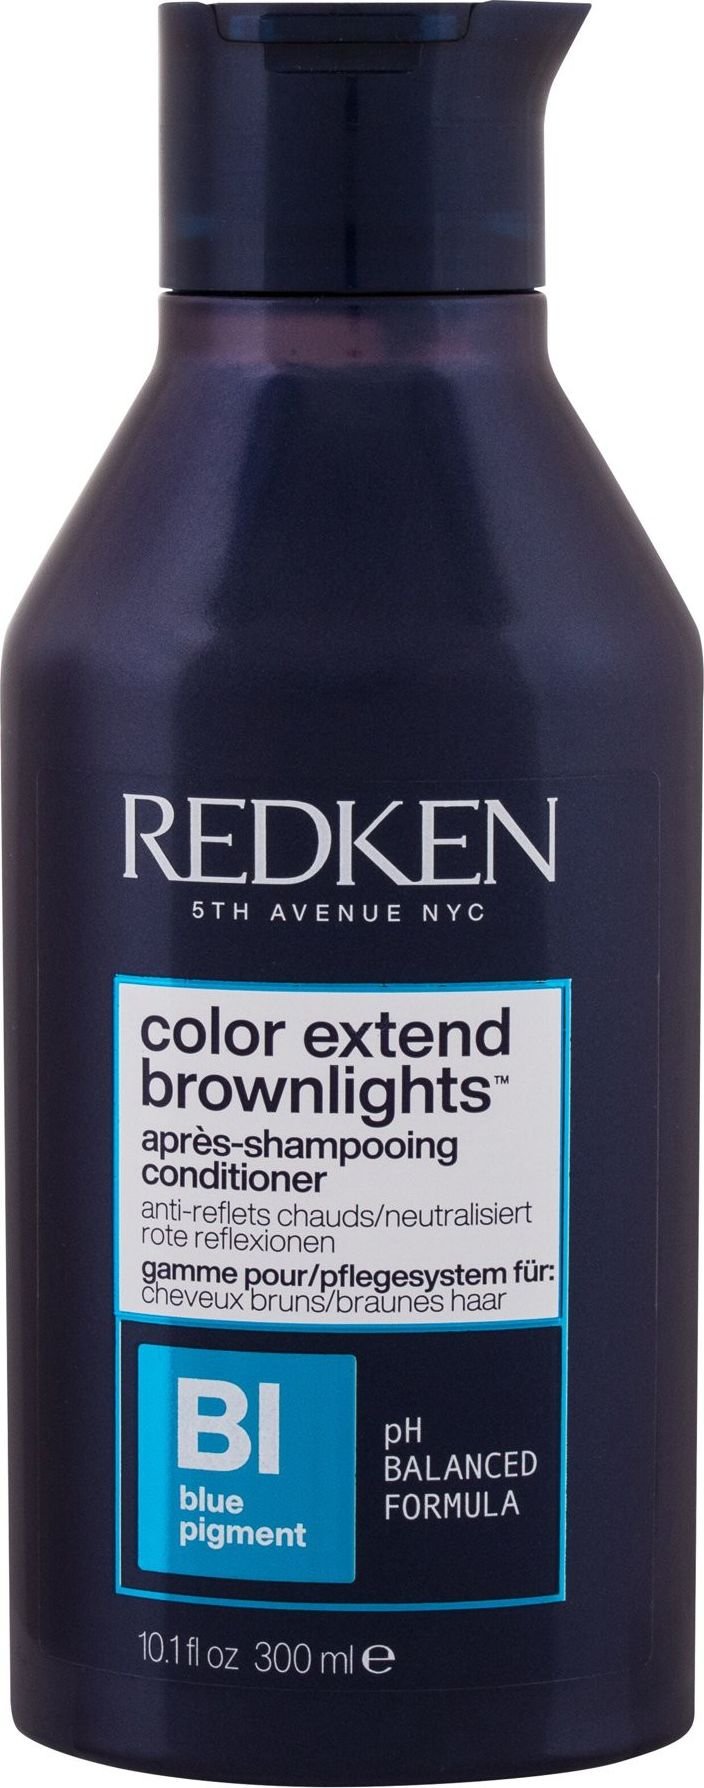 Balsam Redken Redken Color Extend Brownlights 300 ml